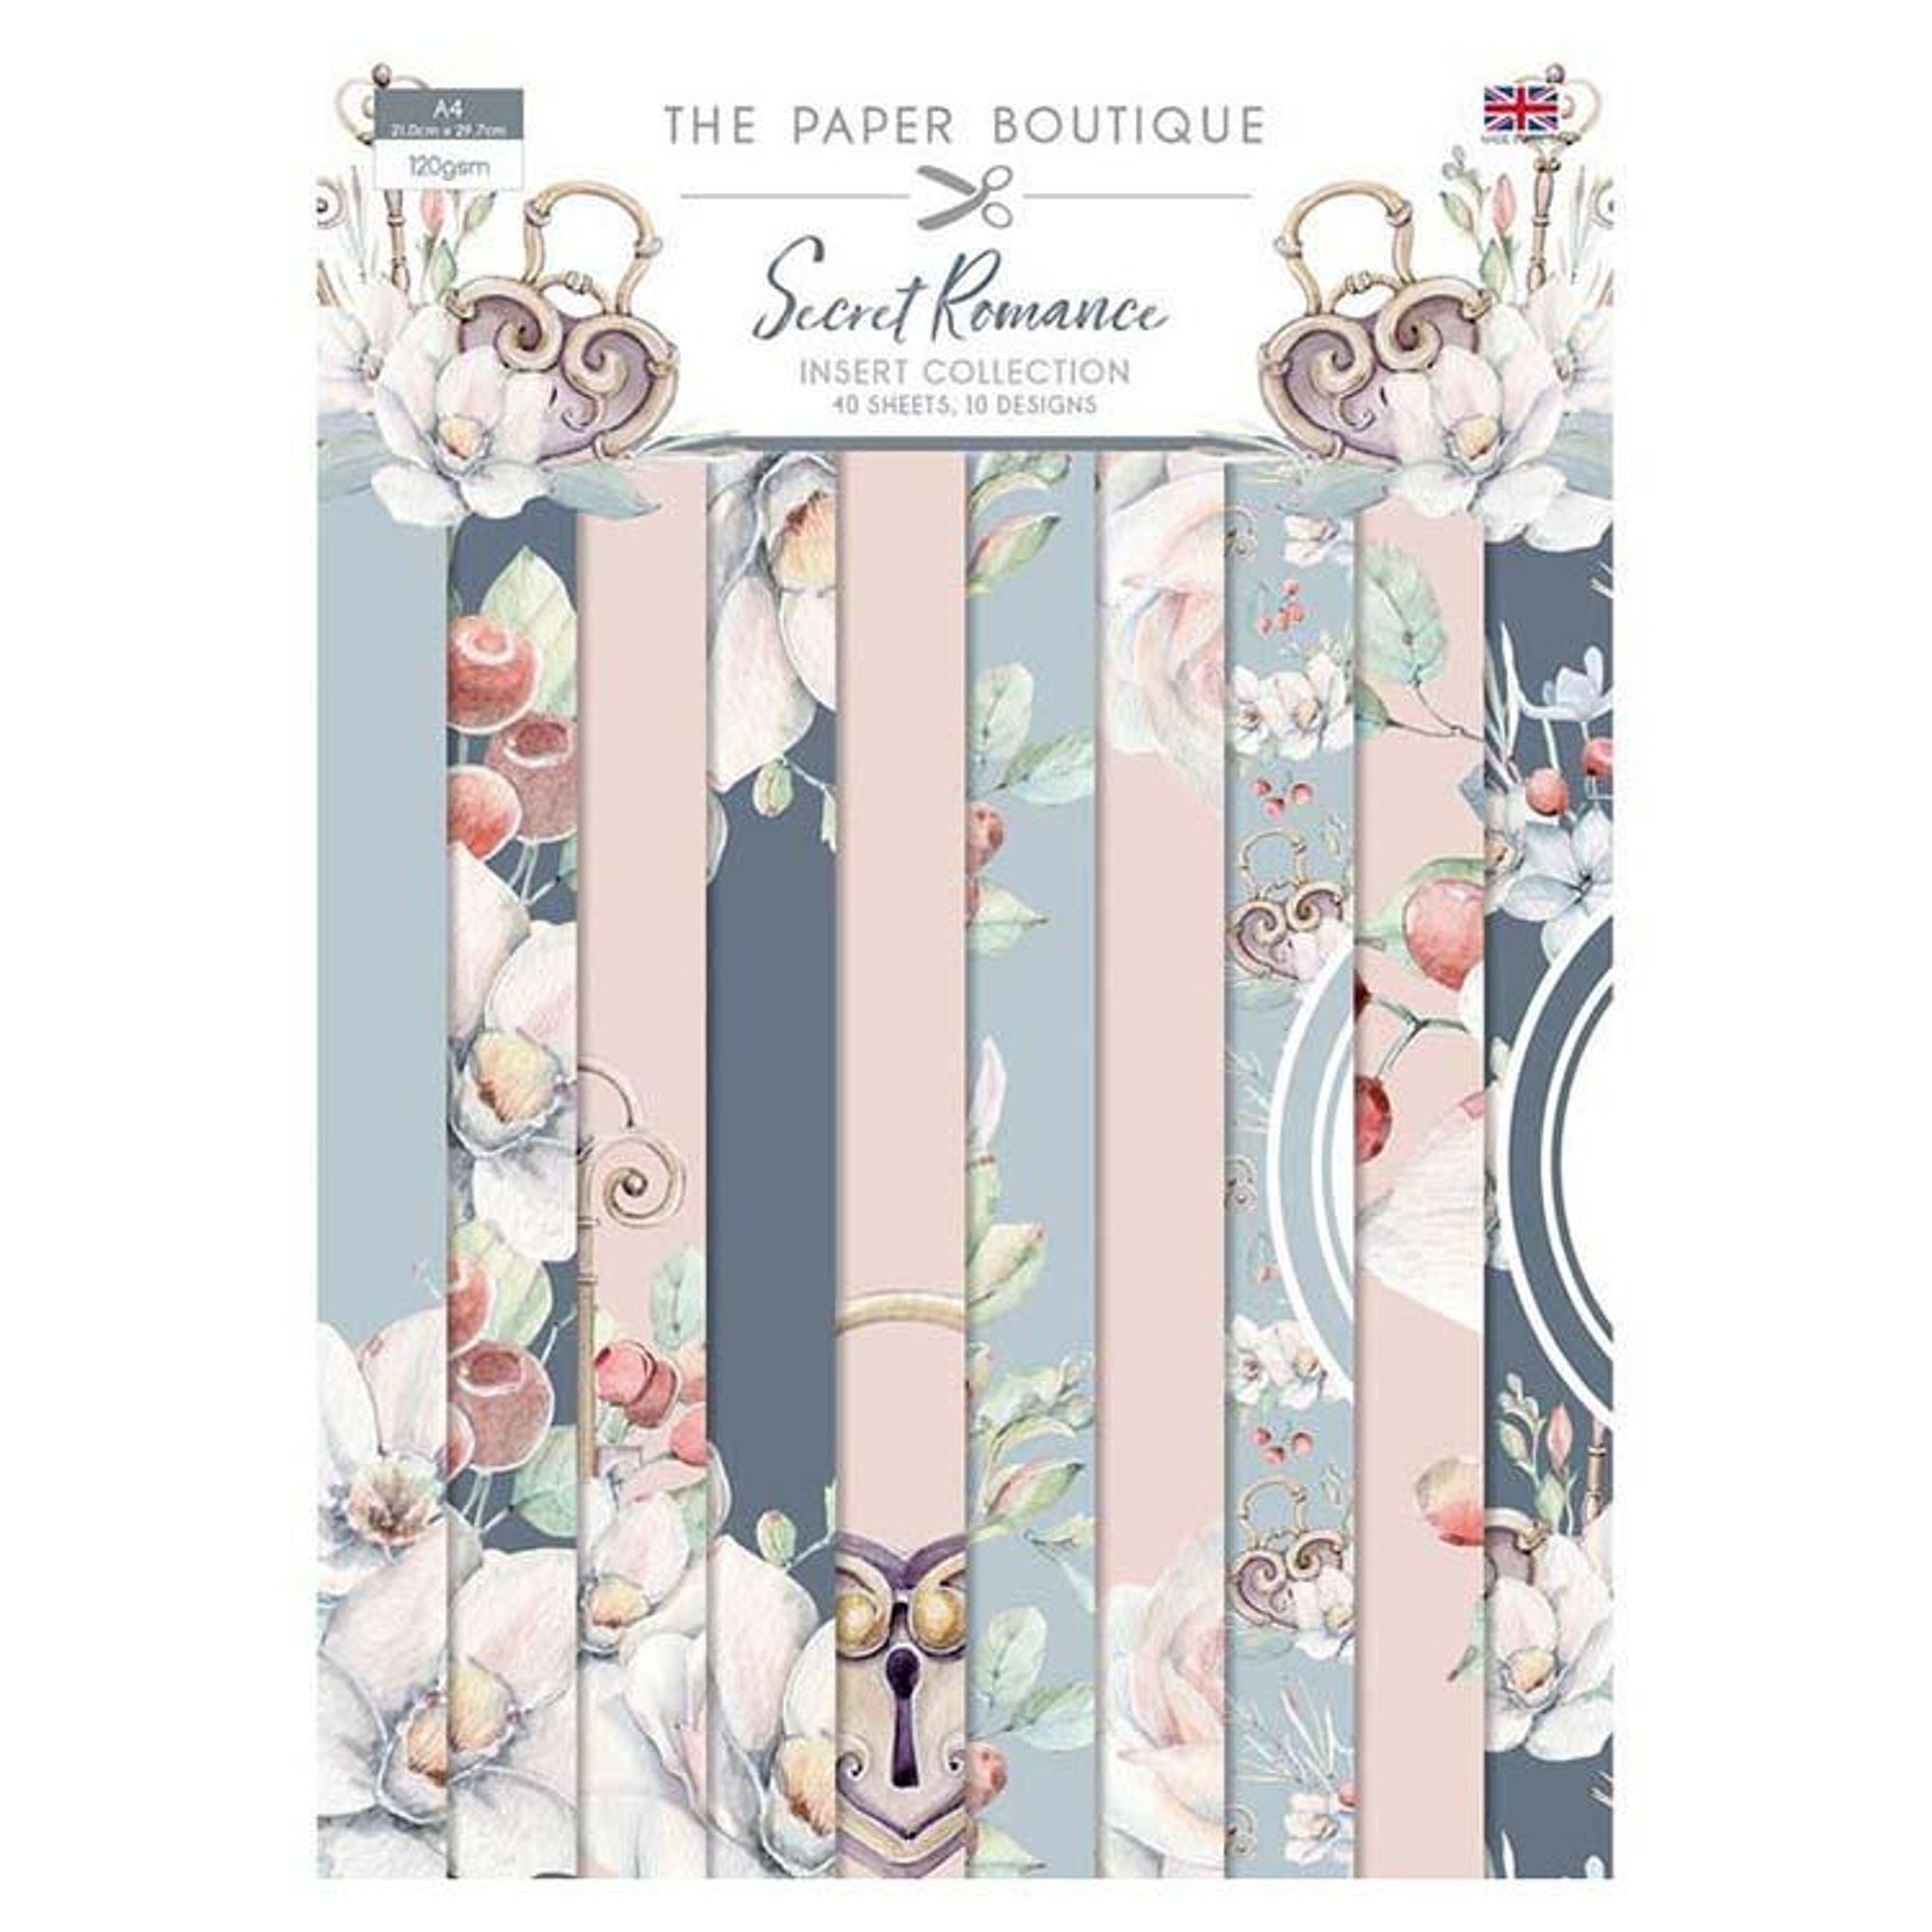 The Paper Boutique Secret Romance Insert Collection A4 40 Sheets 10 Designs 120gsm